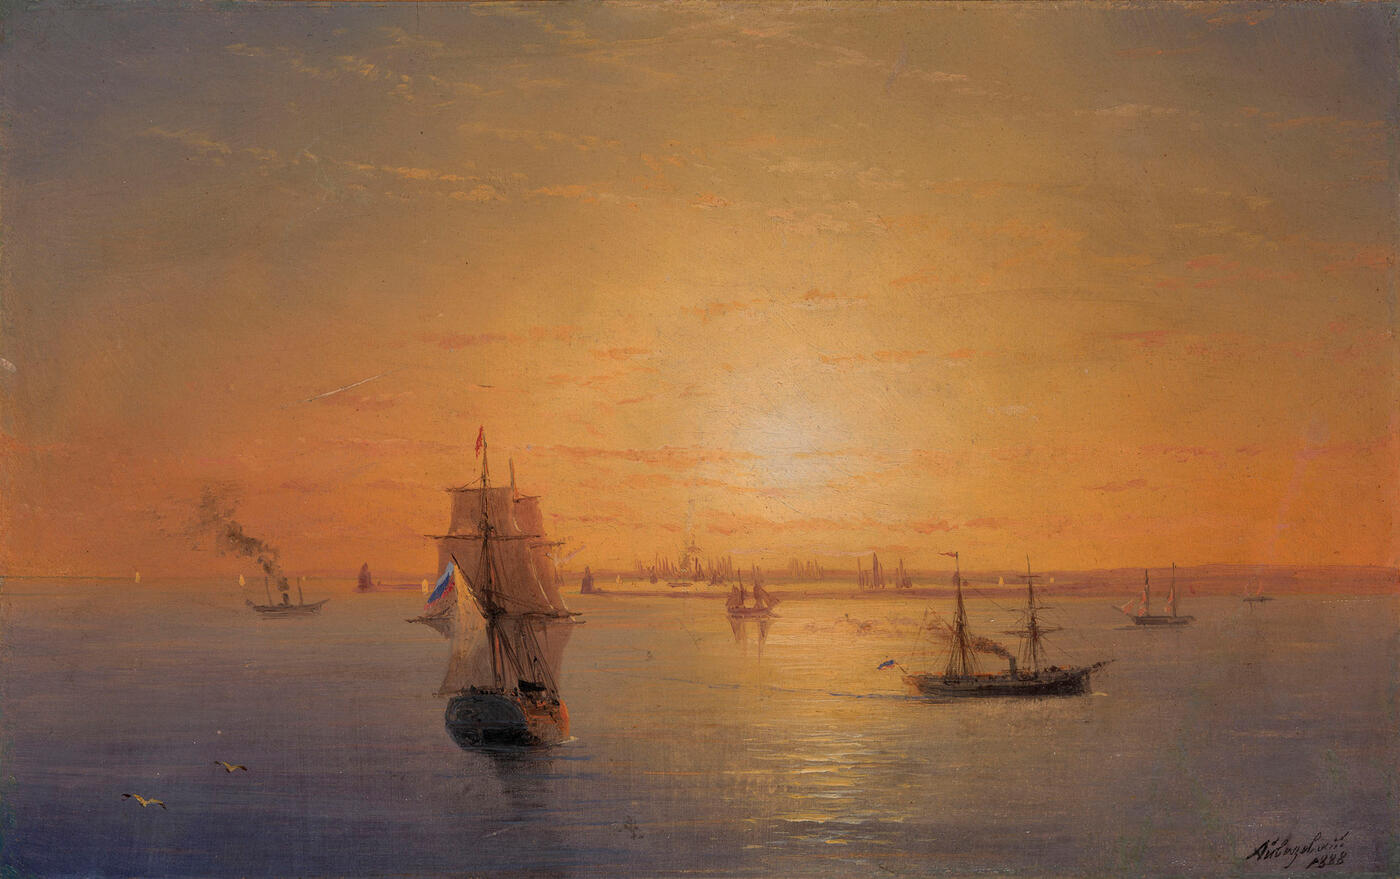 Russian Fleet at Sunset